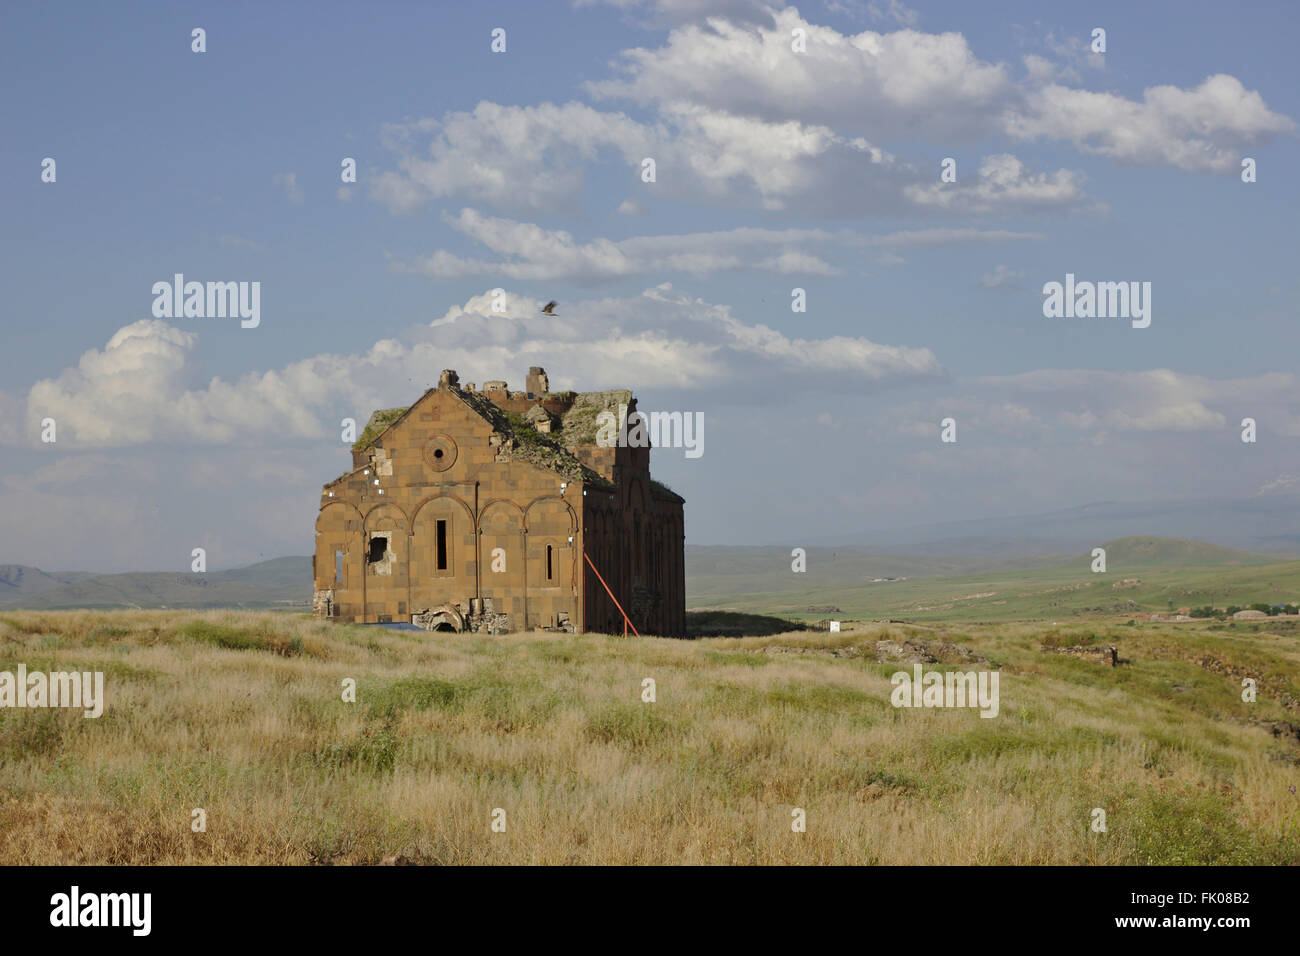 Cattedrale in rovina di Ani, capitale medievale del Regno armeno, Anatolia Orientale, Turchia Foto Stock